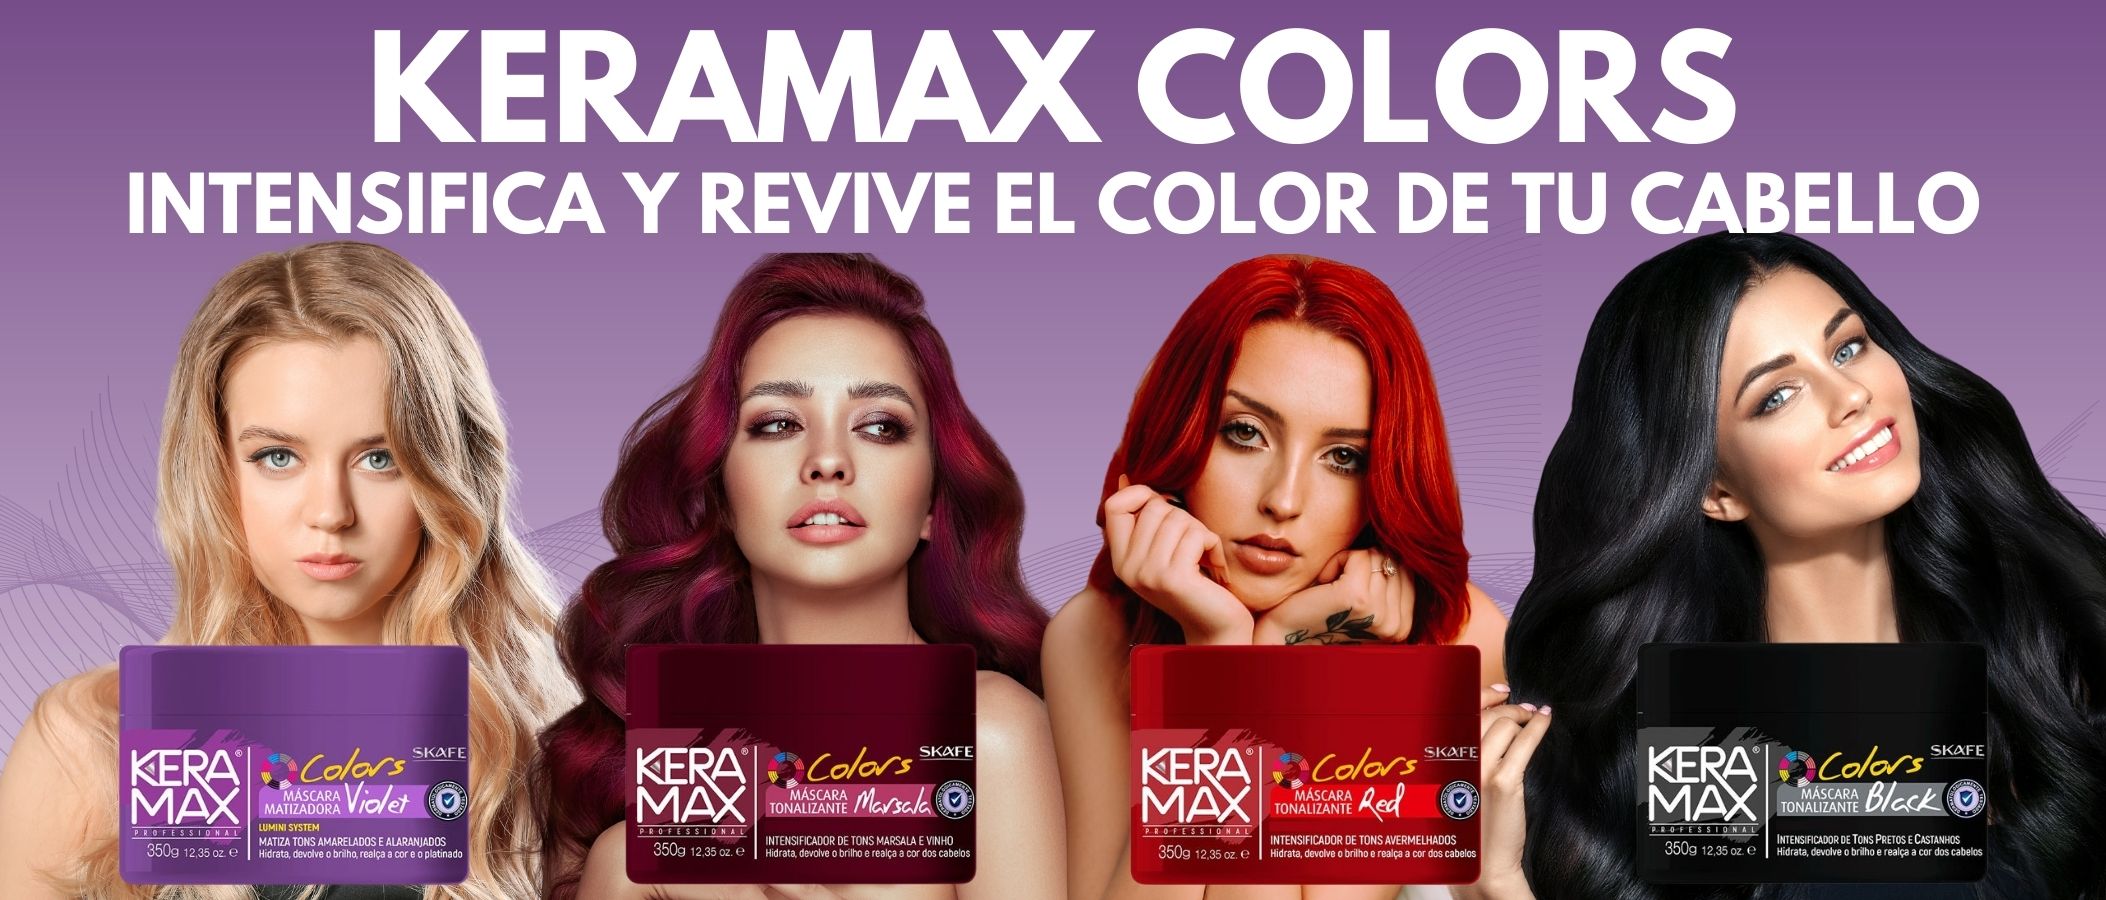 Keramax colors